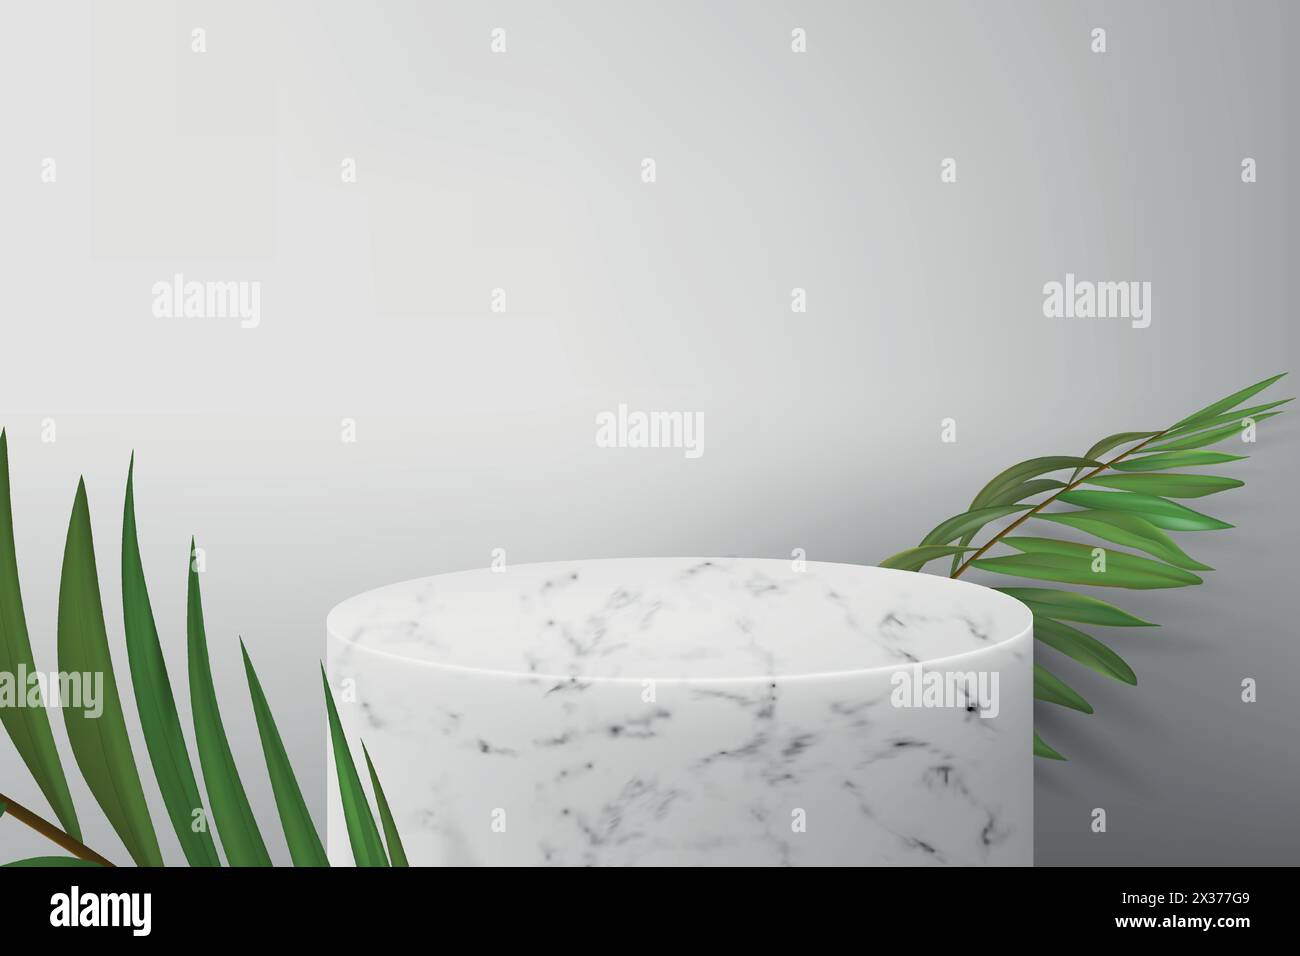 Podium en marbre blanc pour la démonstration du produit. Fond gris avec des feuilles de palmier vertes et un piédestal vide pour afficher les cosmétiques. Disposition réaliste Illustration de Vecteur